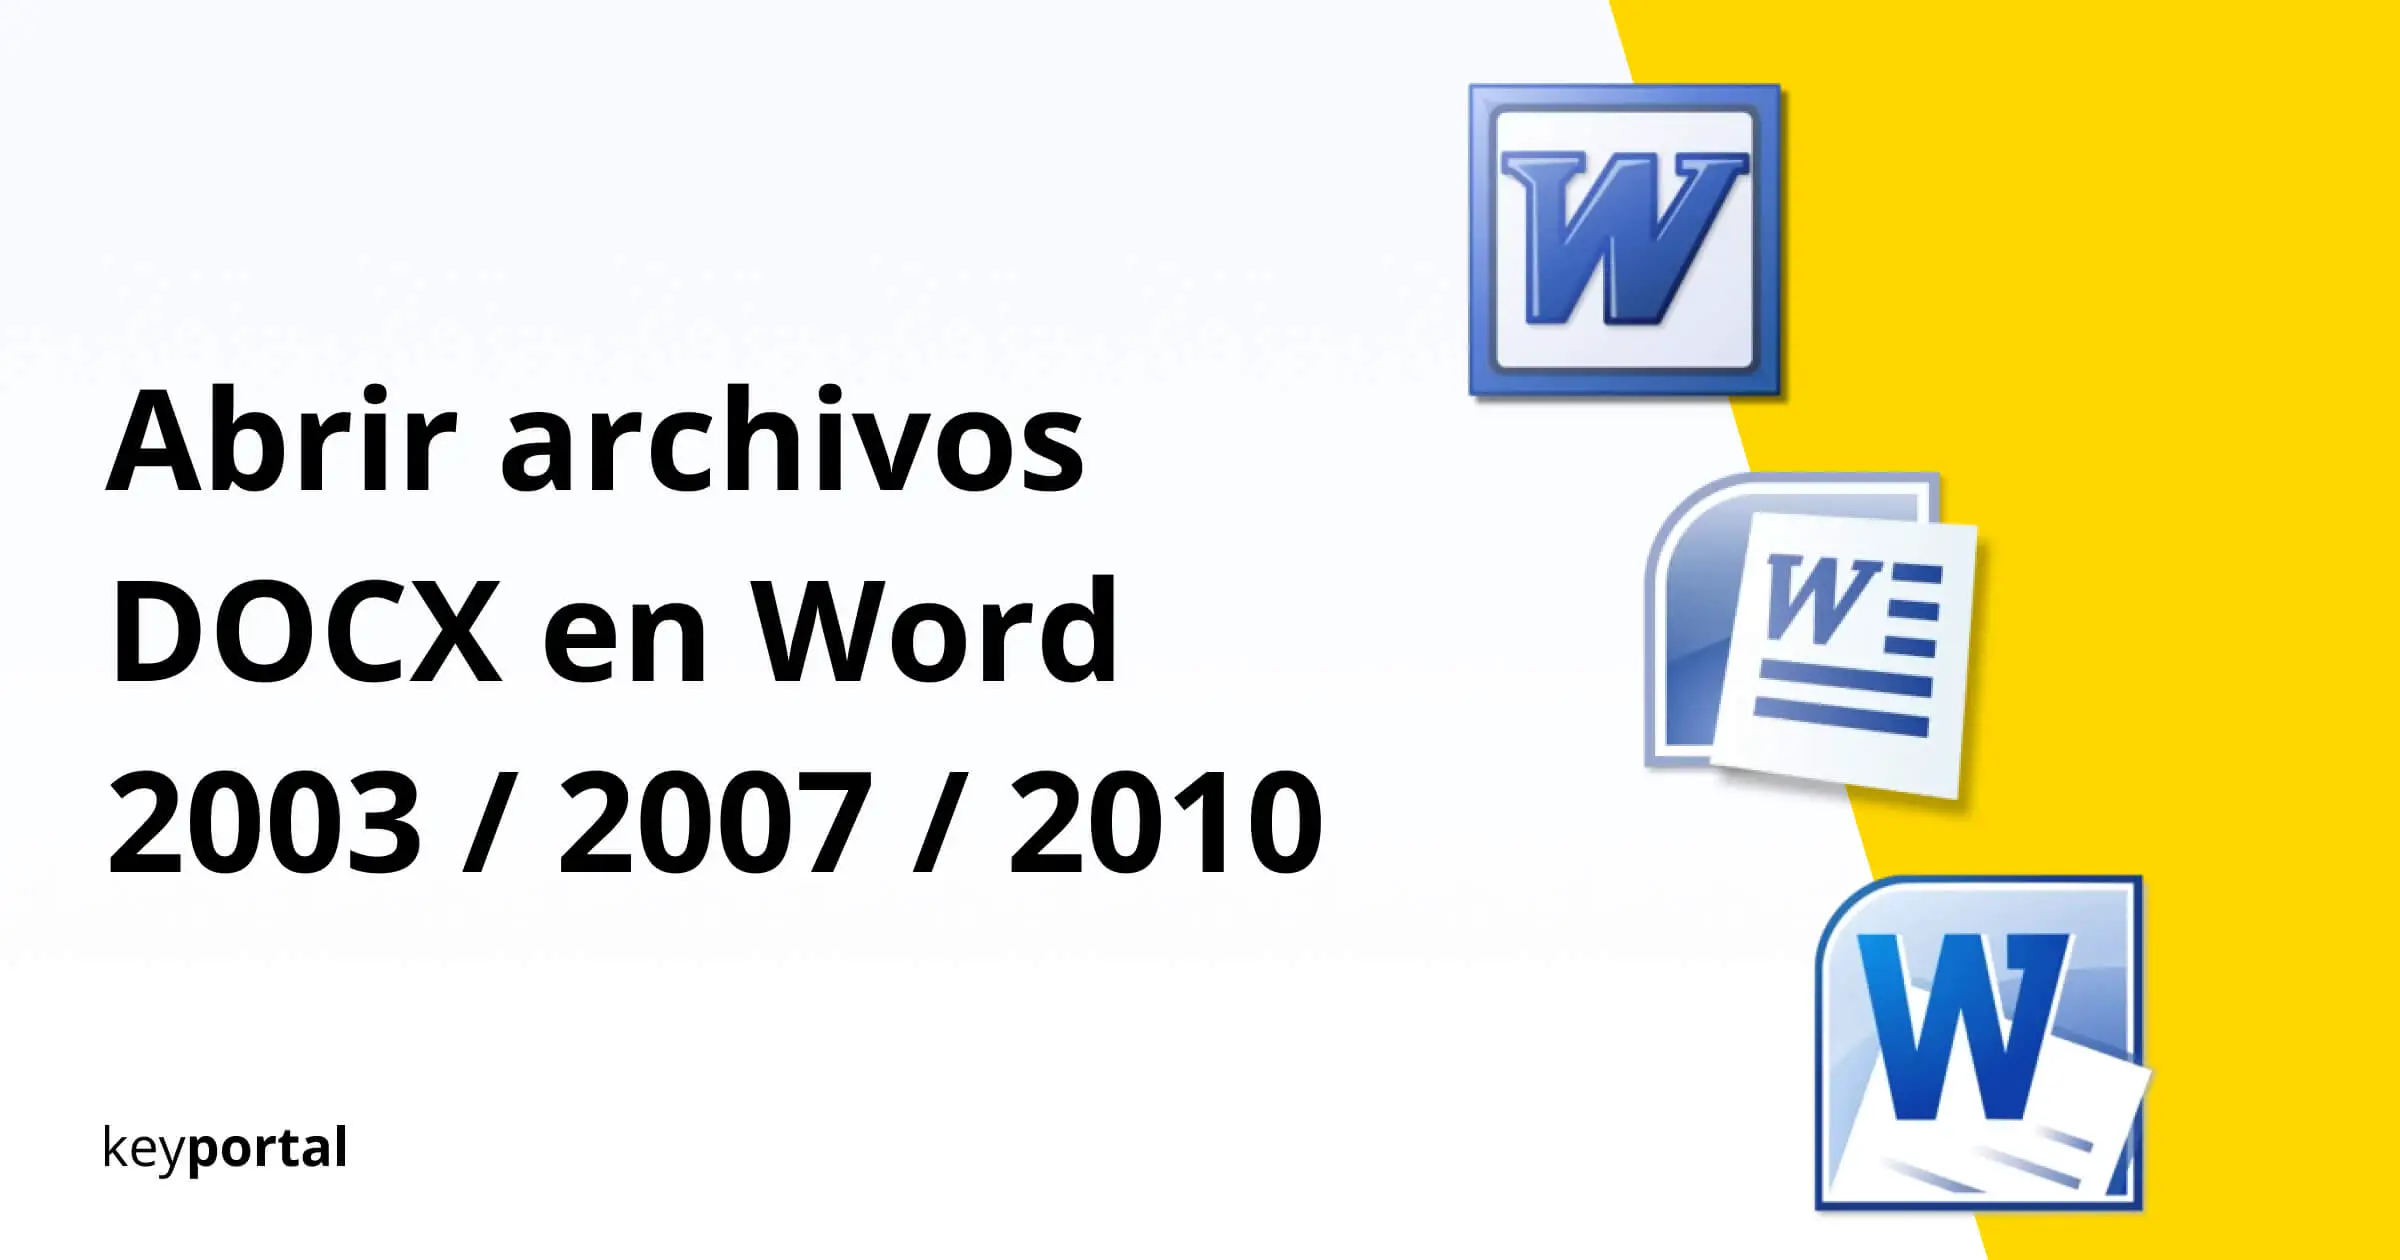 Trastorno Faringe Miserable Abrir archivos DOCX en Word 2003 / 2007 / 2010 - keyportal.es